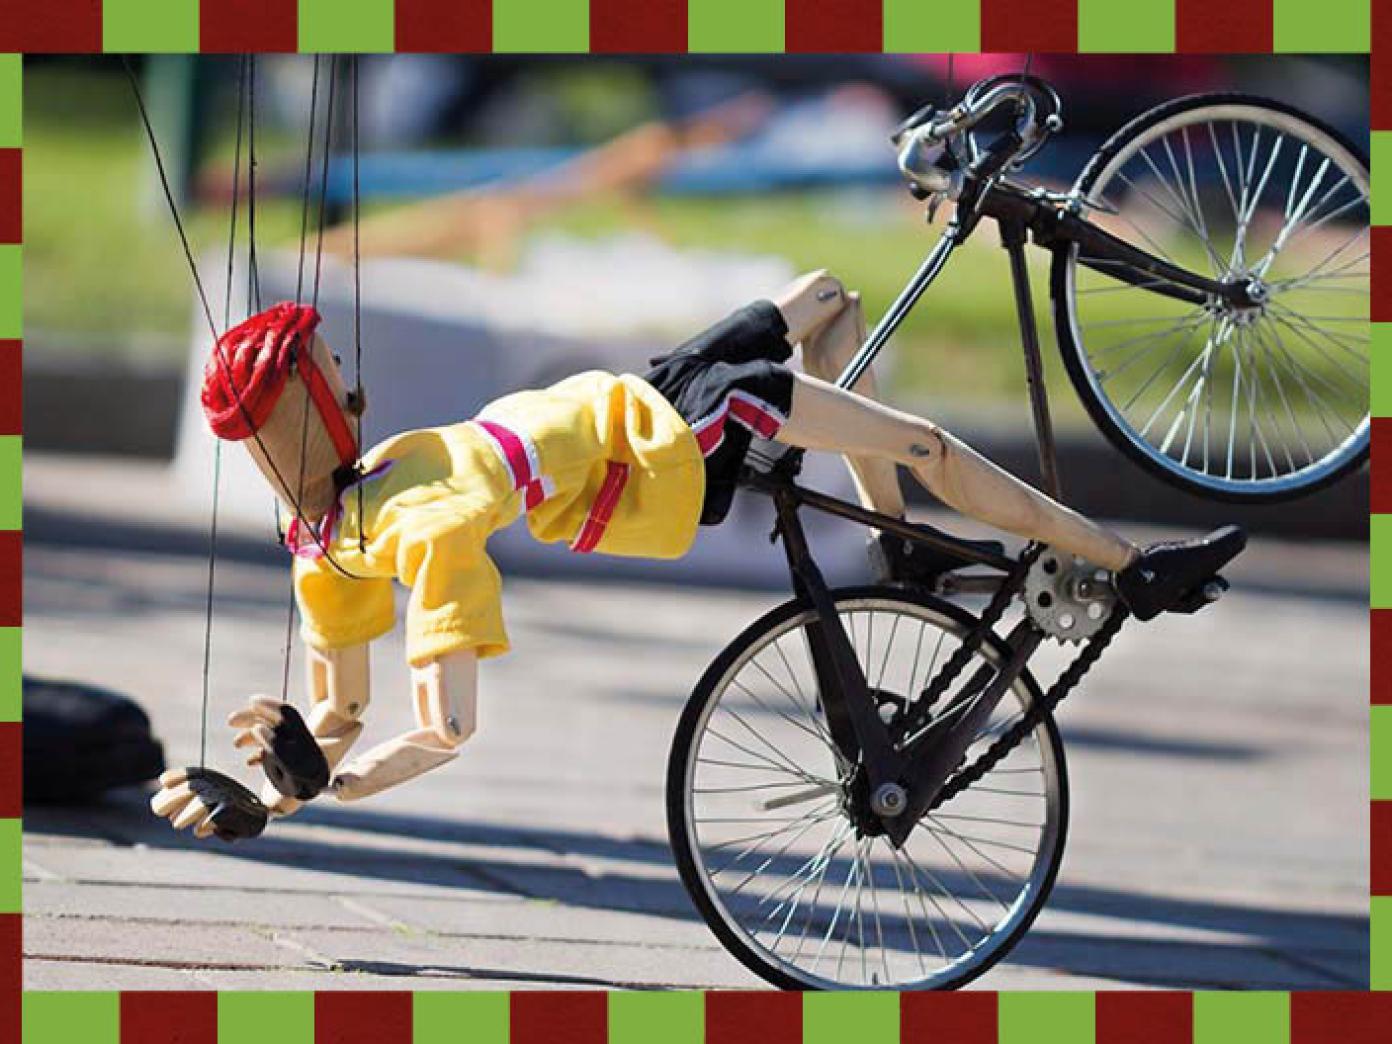 Dukke på dukkecykel på asfalt. Fra 'Hanging by a thread' af Di Filippo Marionette